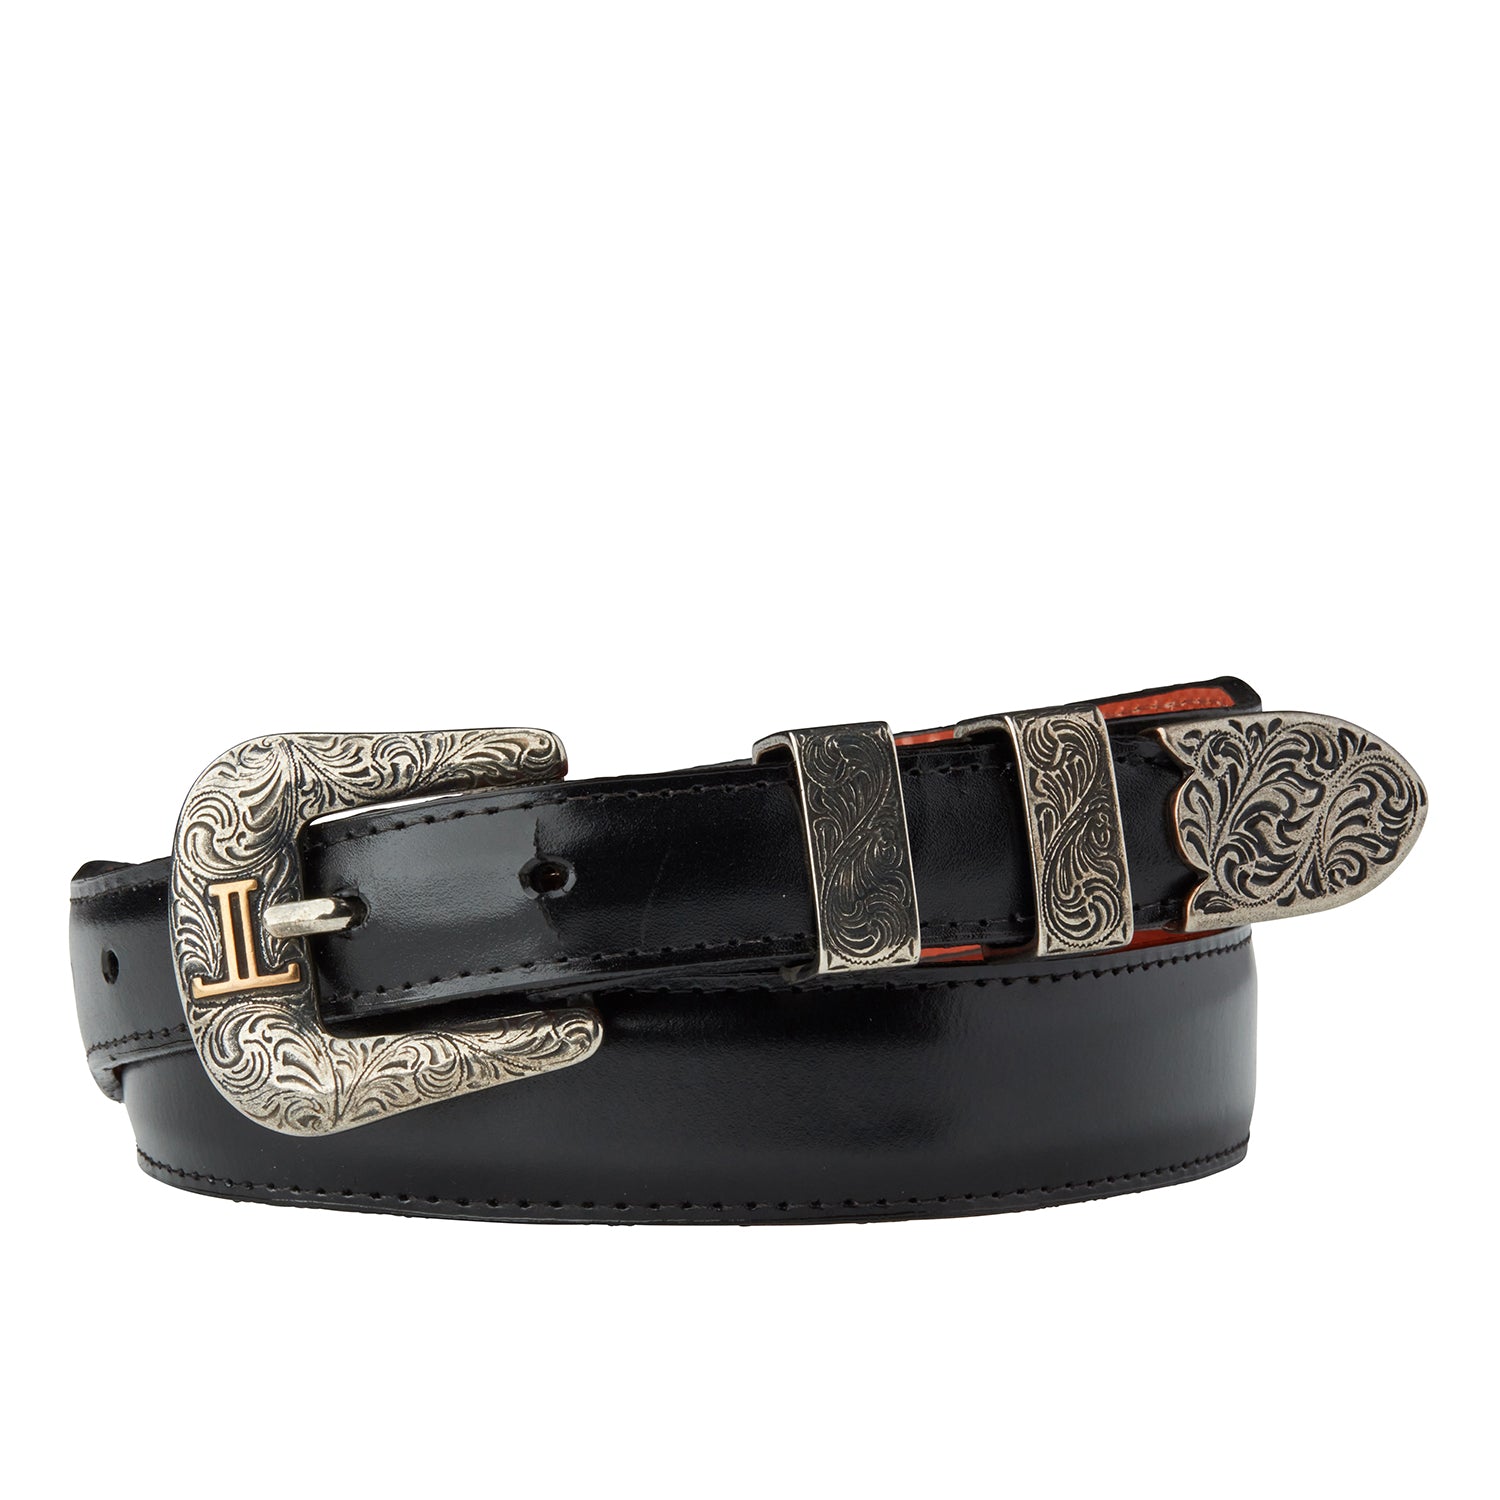 Louis Vuitton Mens Leather Waist Belt Black SIZE 100/40